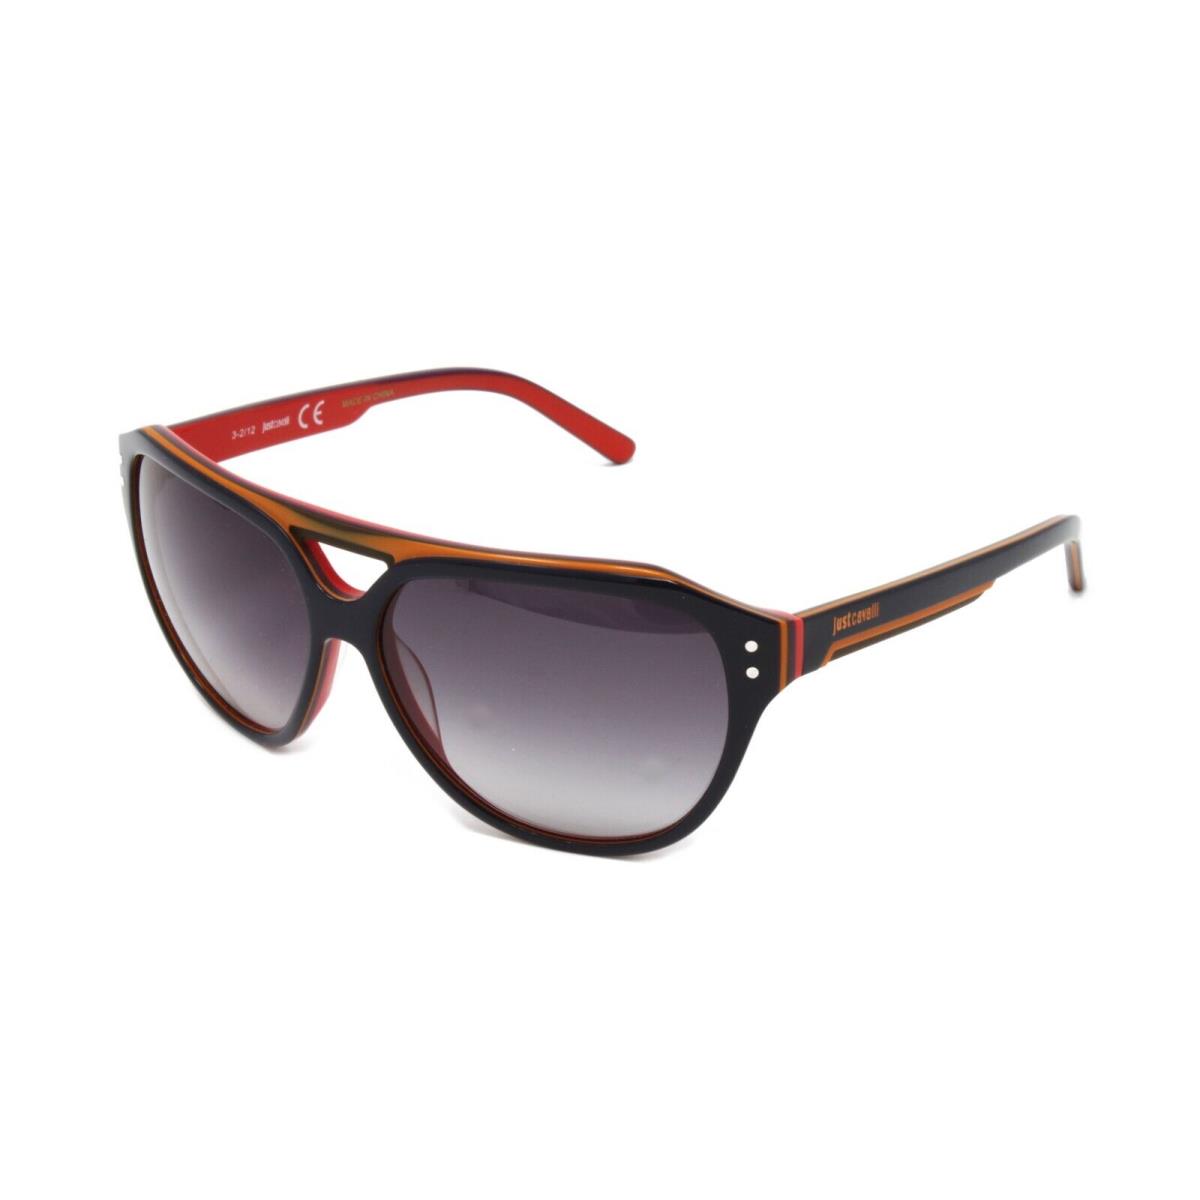 Just Cavalli Sunglasses Unisex Square JC505S 92W Black/red/orange 58mm